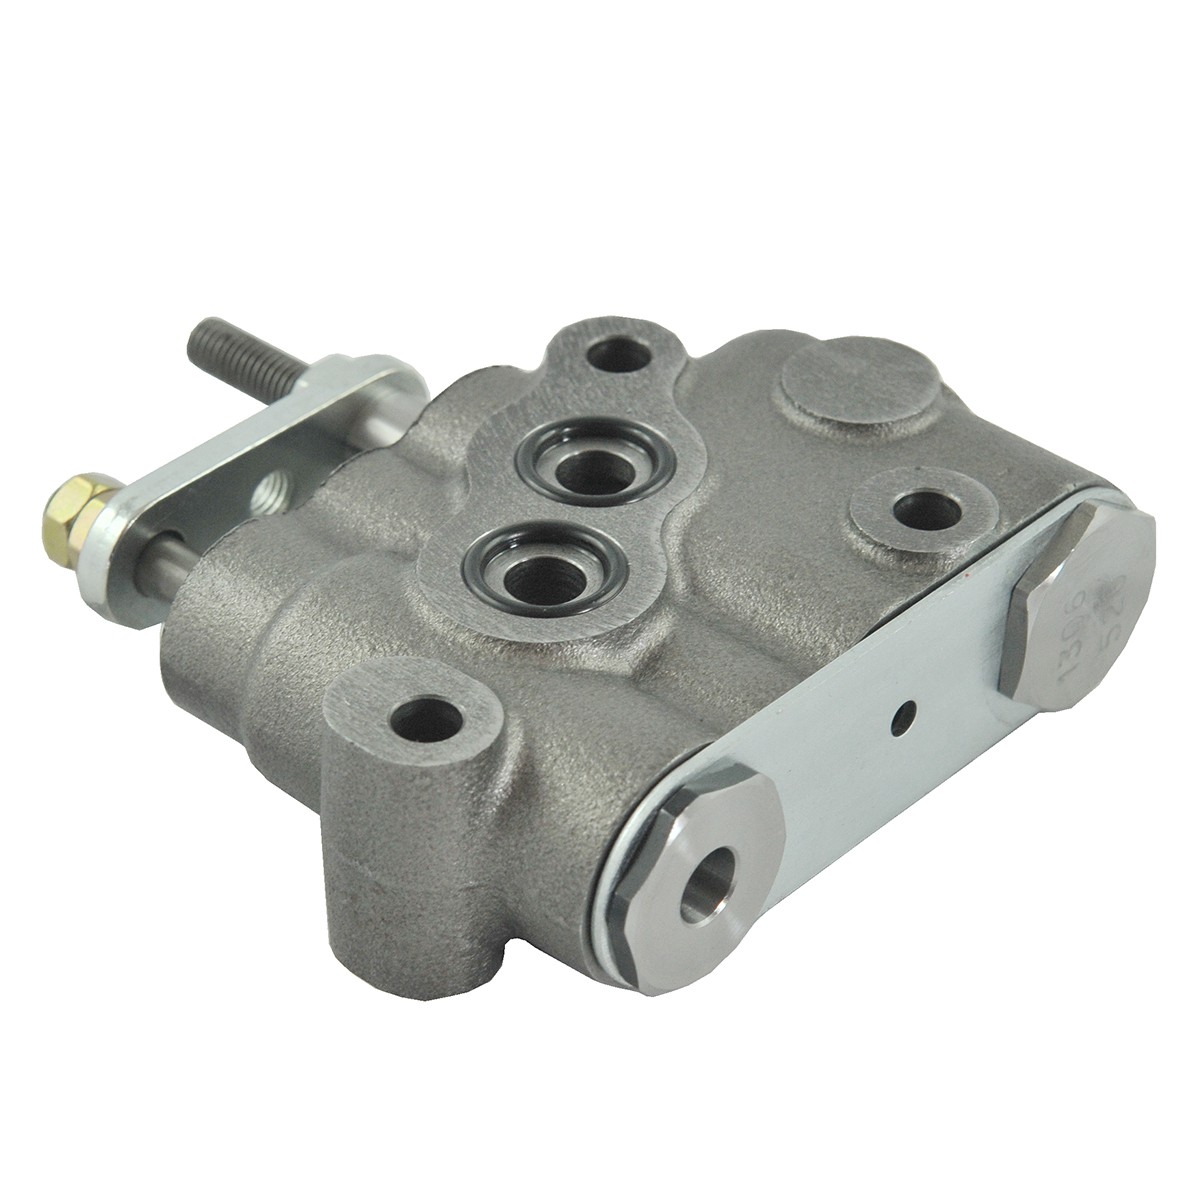 Hydraulic valve / 180 KGF / TRG822 / LS MT3.35 / LS MT3.40 / LS MT 3.50 / LS MT 3.60 / A1822151 / 40007577 / 40250285